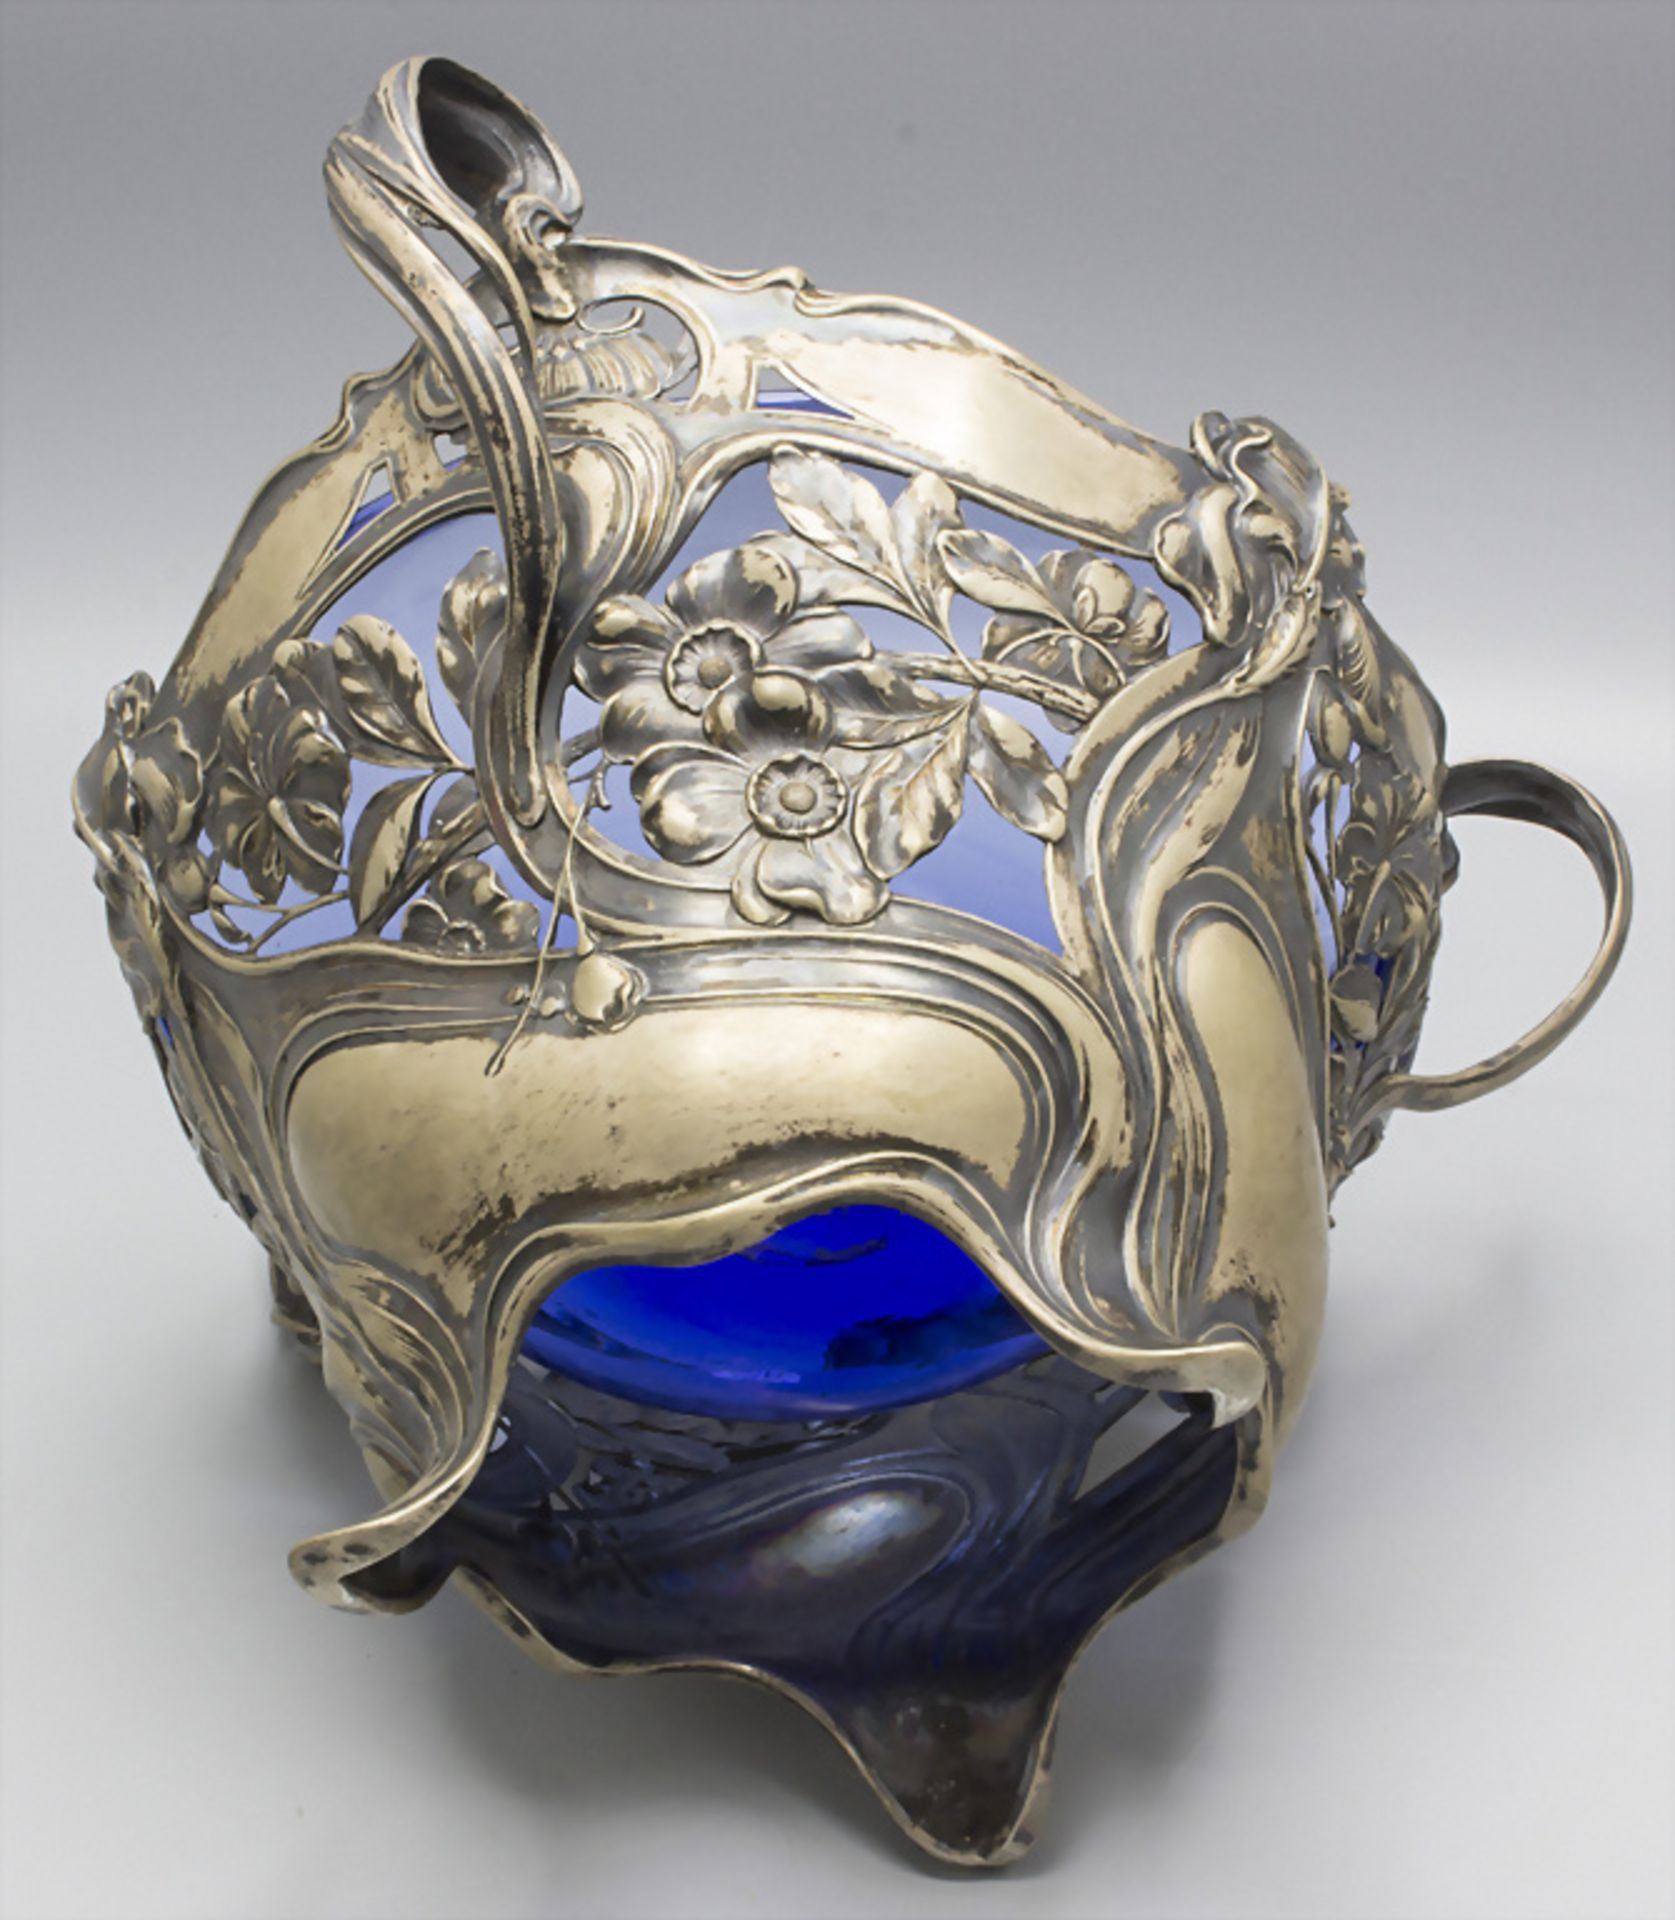 Jugendstil Henkelschale / An Art Nouveau sterling silver bowl with stylised ivy pattern, ... - Image 3 of 4